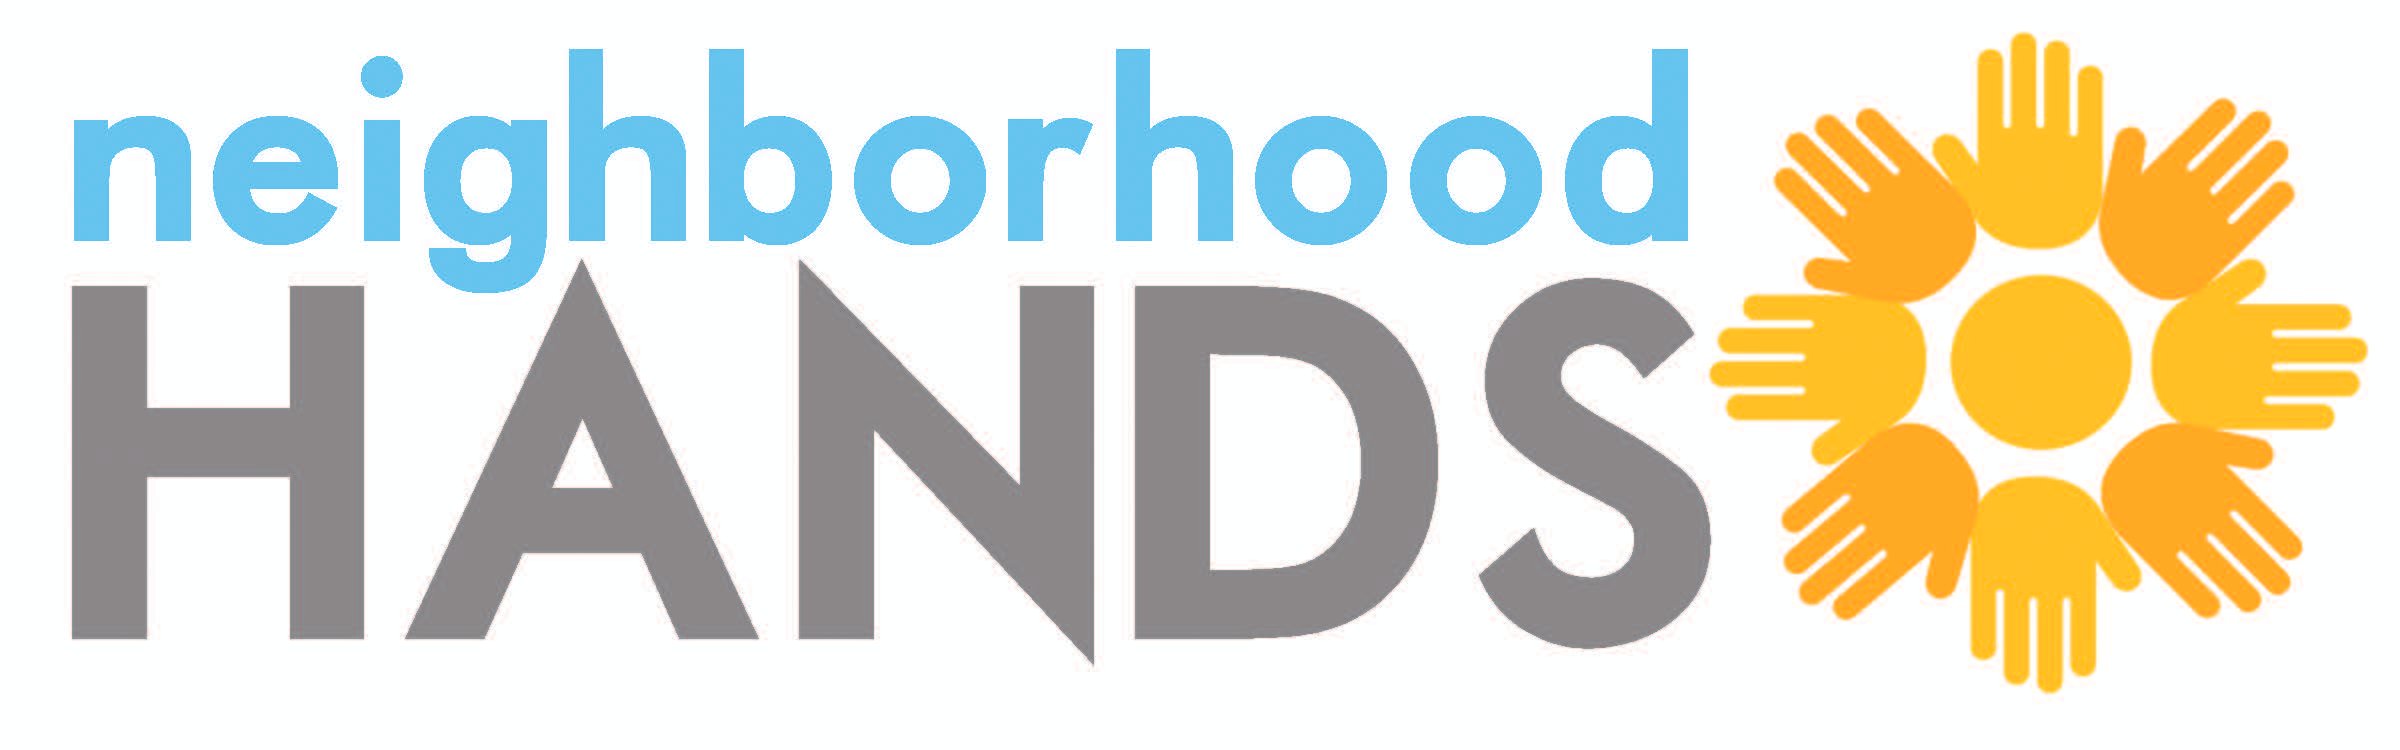 Neighborhoodhands_logo.jpg